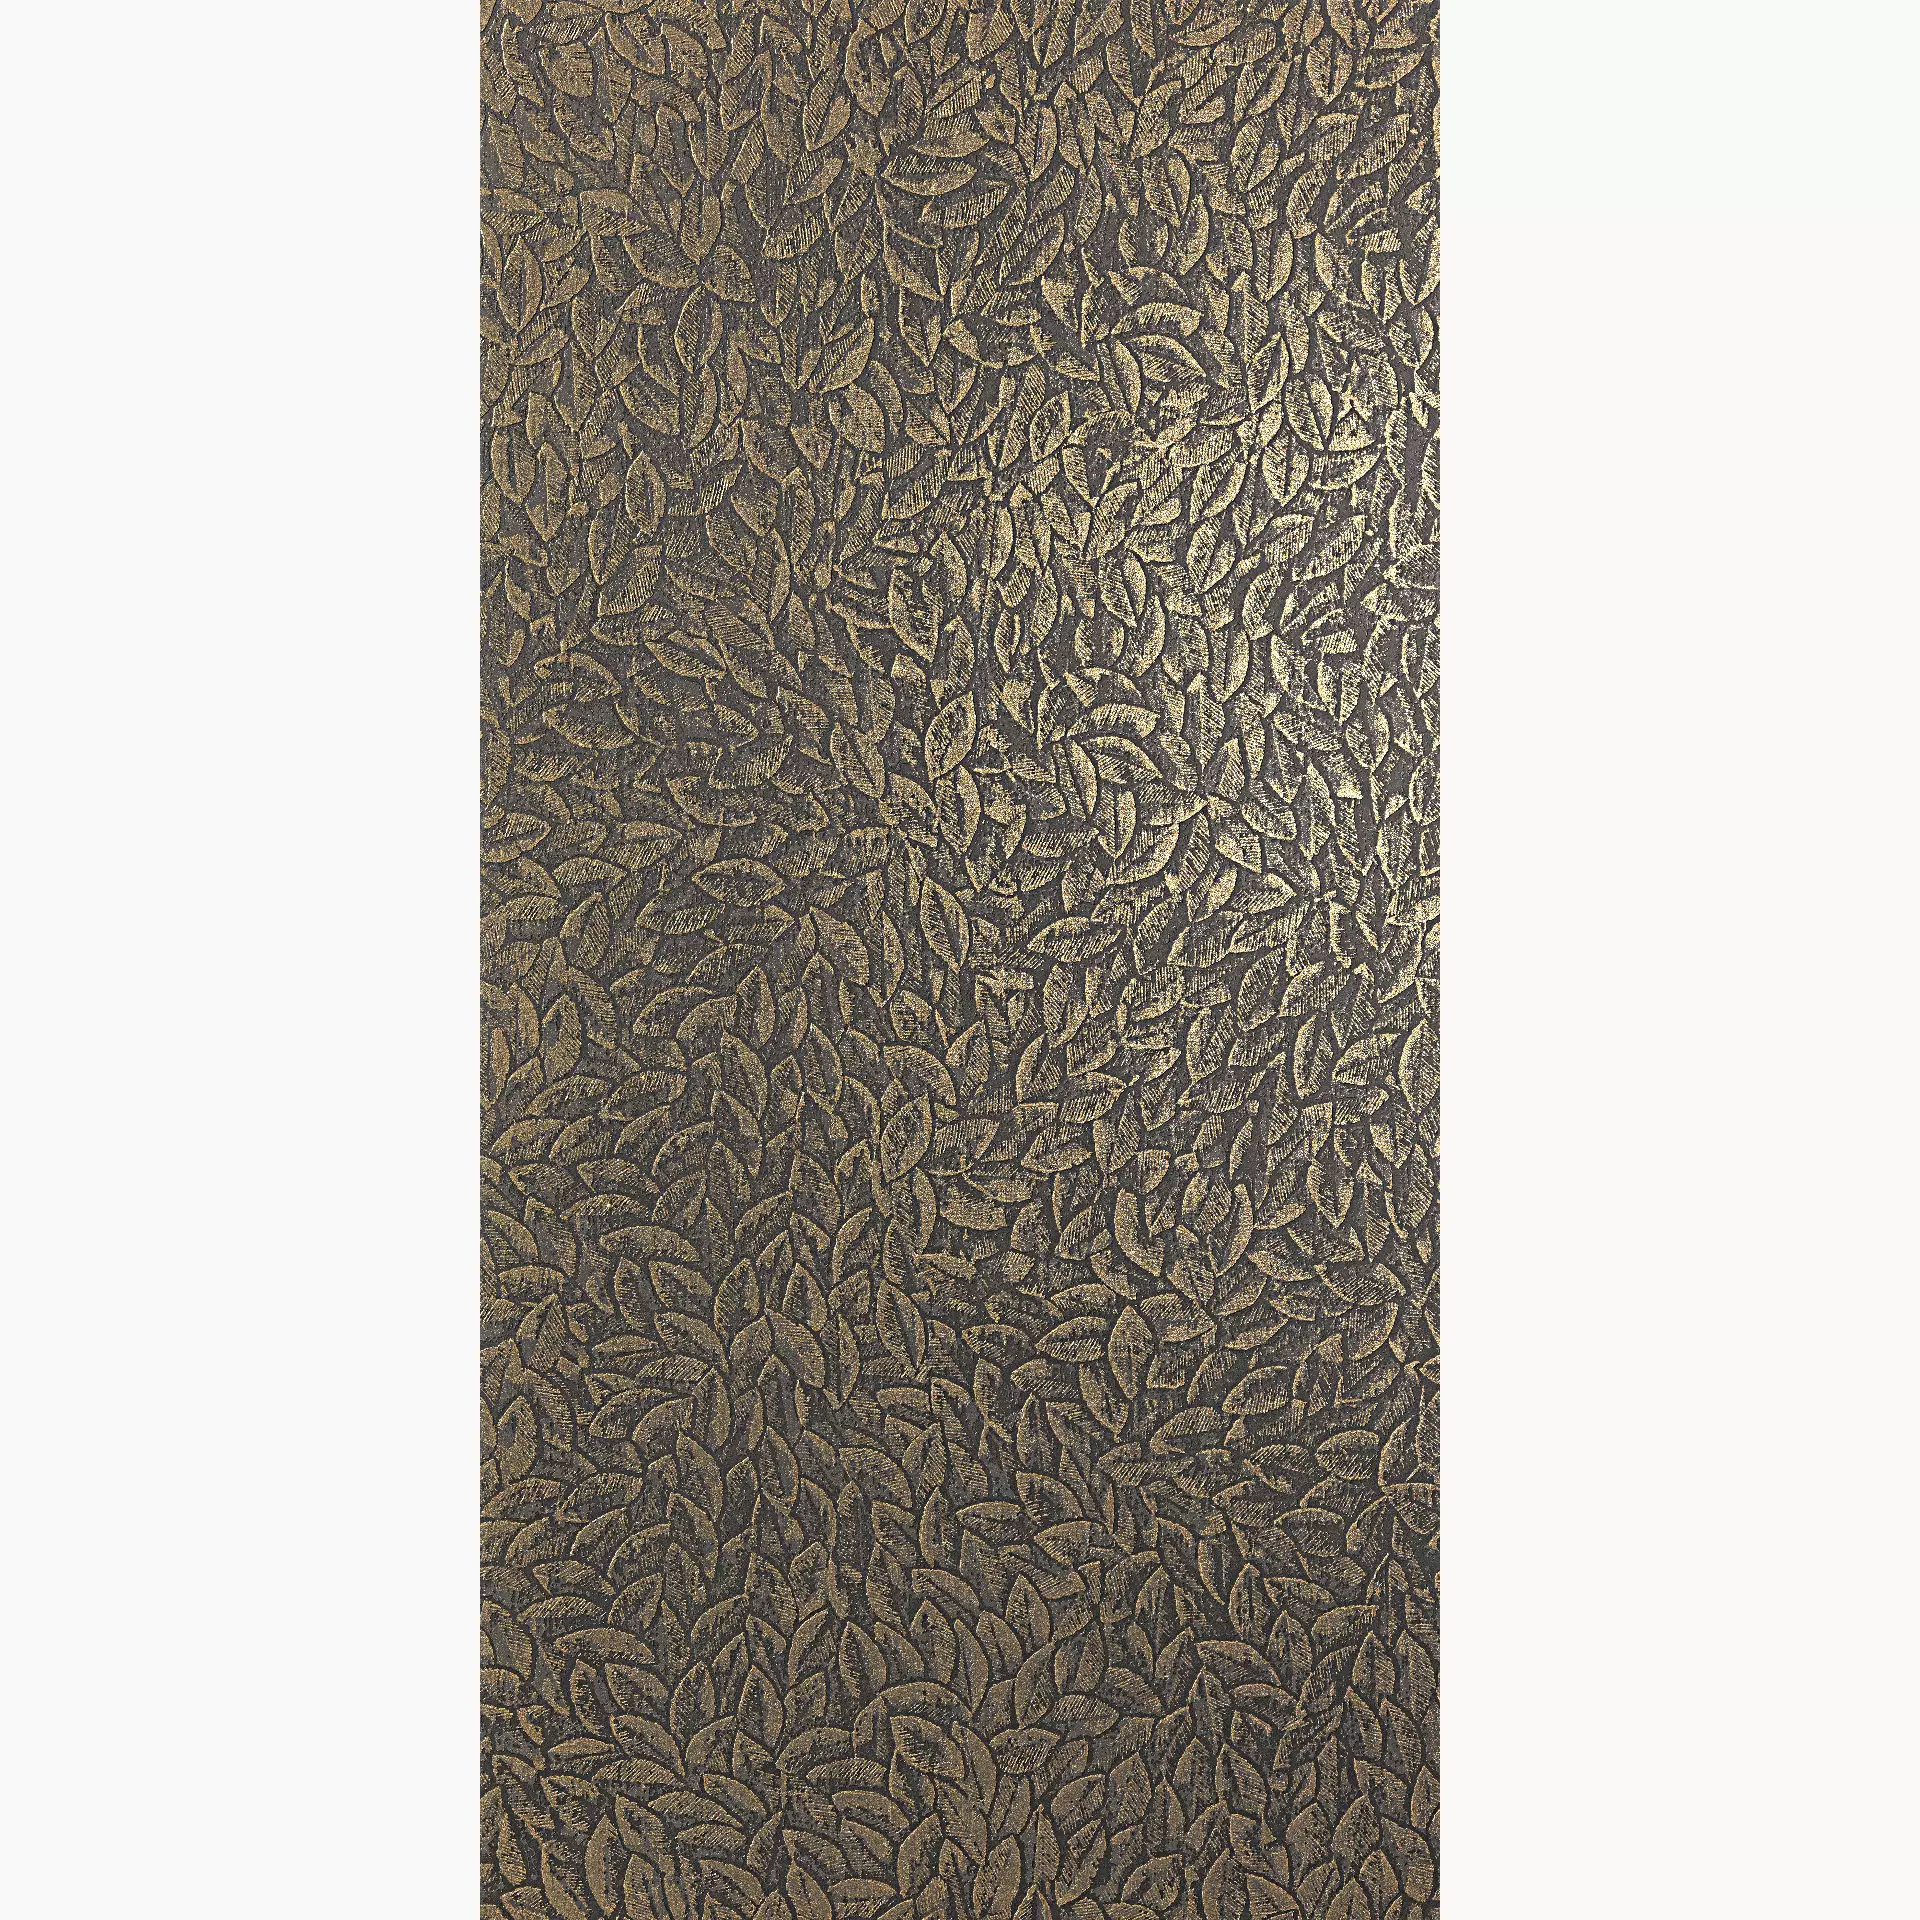 CIR Showall Foliage Gold Naturale Wall 23 1081879 60x120cm rektifiziert